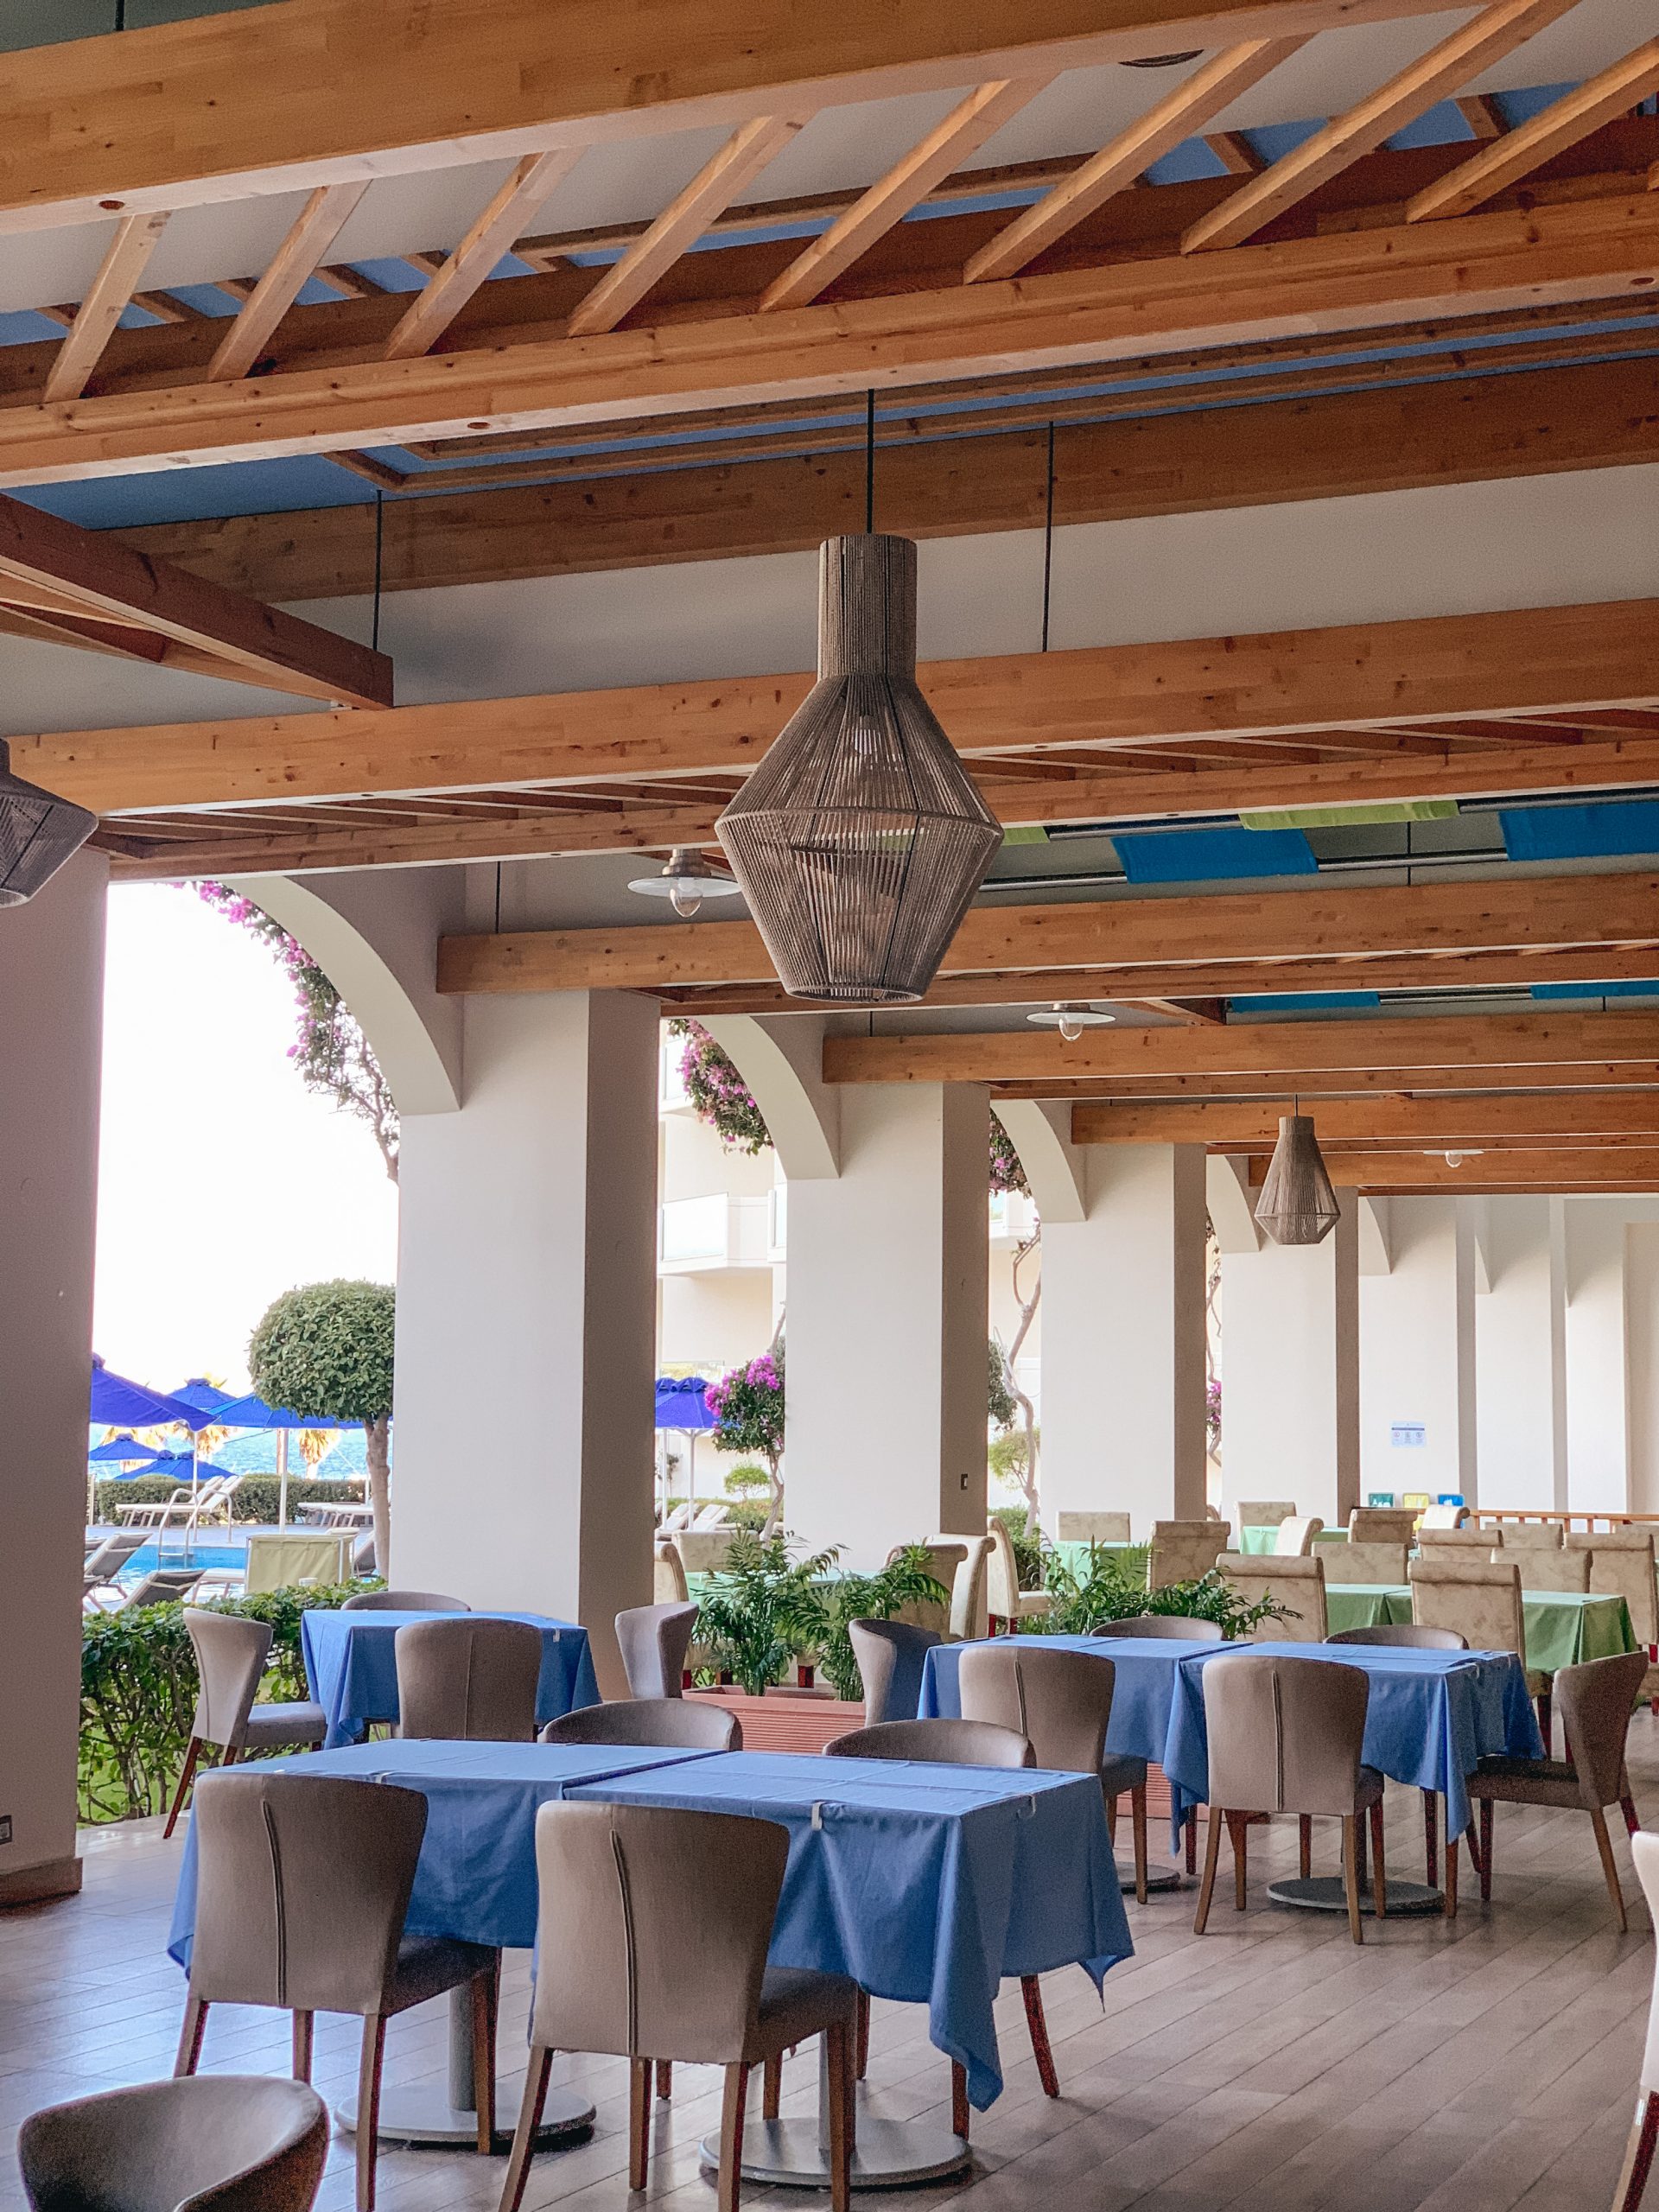 Holiday in Rhodes, Greece. Atrium Hotels. Atrium Platinum Resort Hotel & Spa. Best Hotels in Rhodes | ELIA & TRAMONTO restaurant – MEDITERRANEAN CUISINE